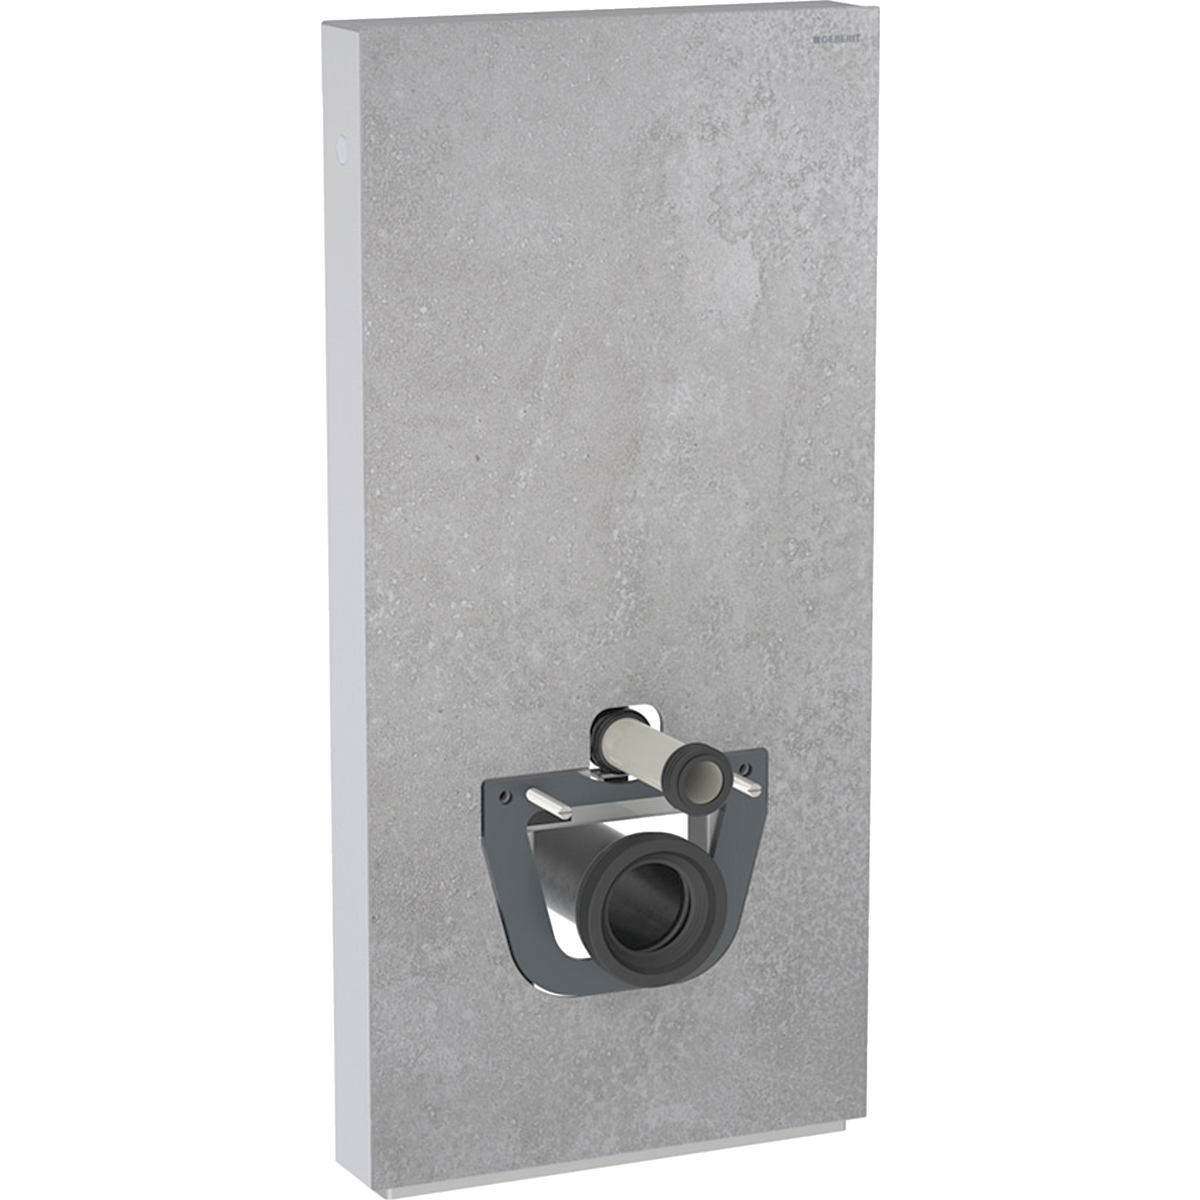 Monolith Sanitärmodul für Wand-WC, 101 cm, Frontverkleidung aus Steinzeug: Steinzeug Betonoptik, Aluminium